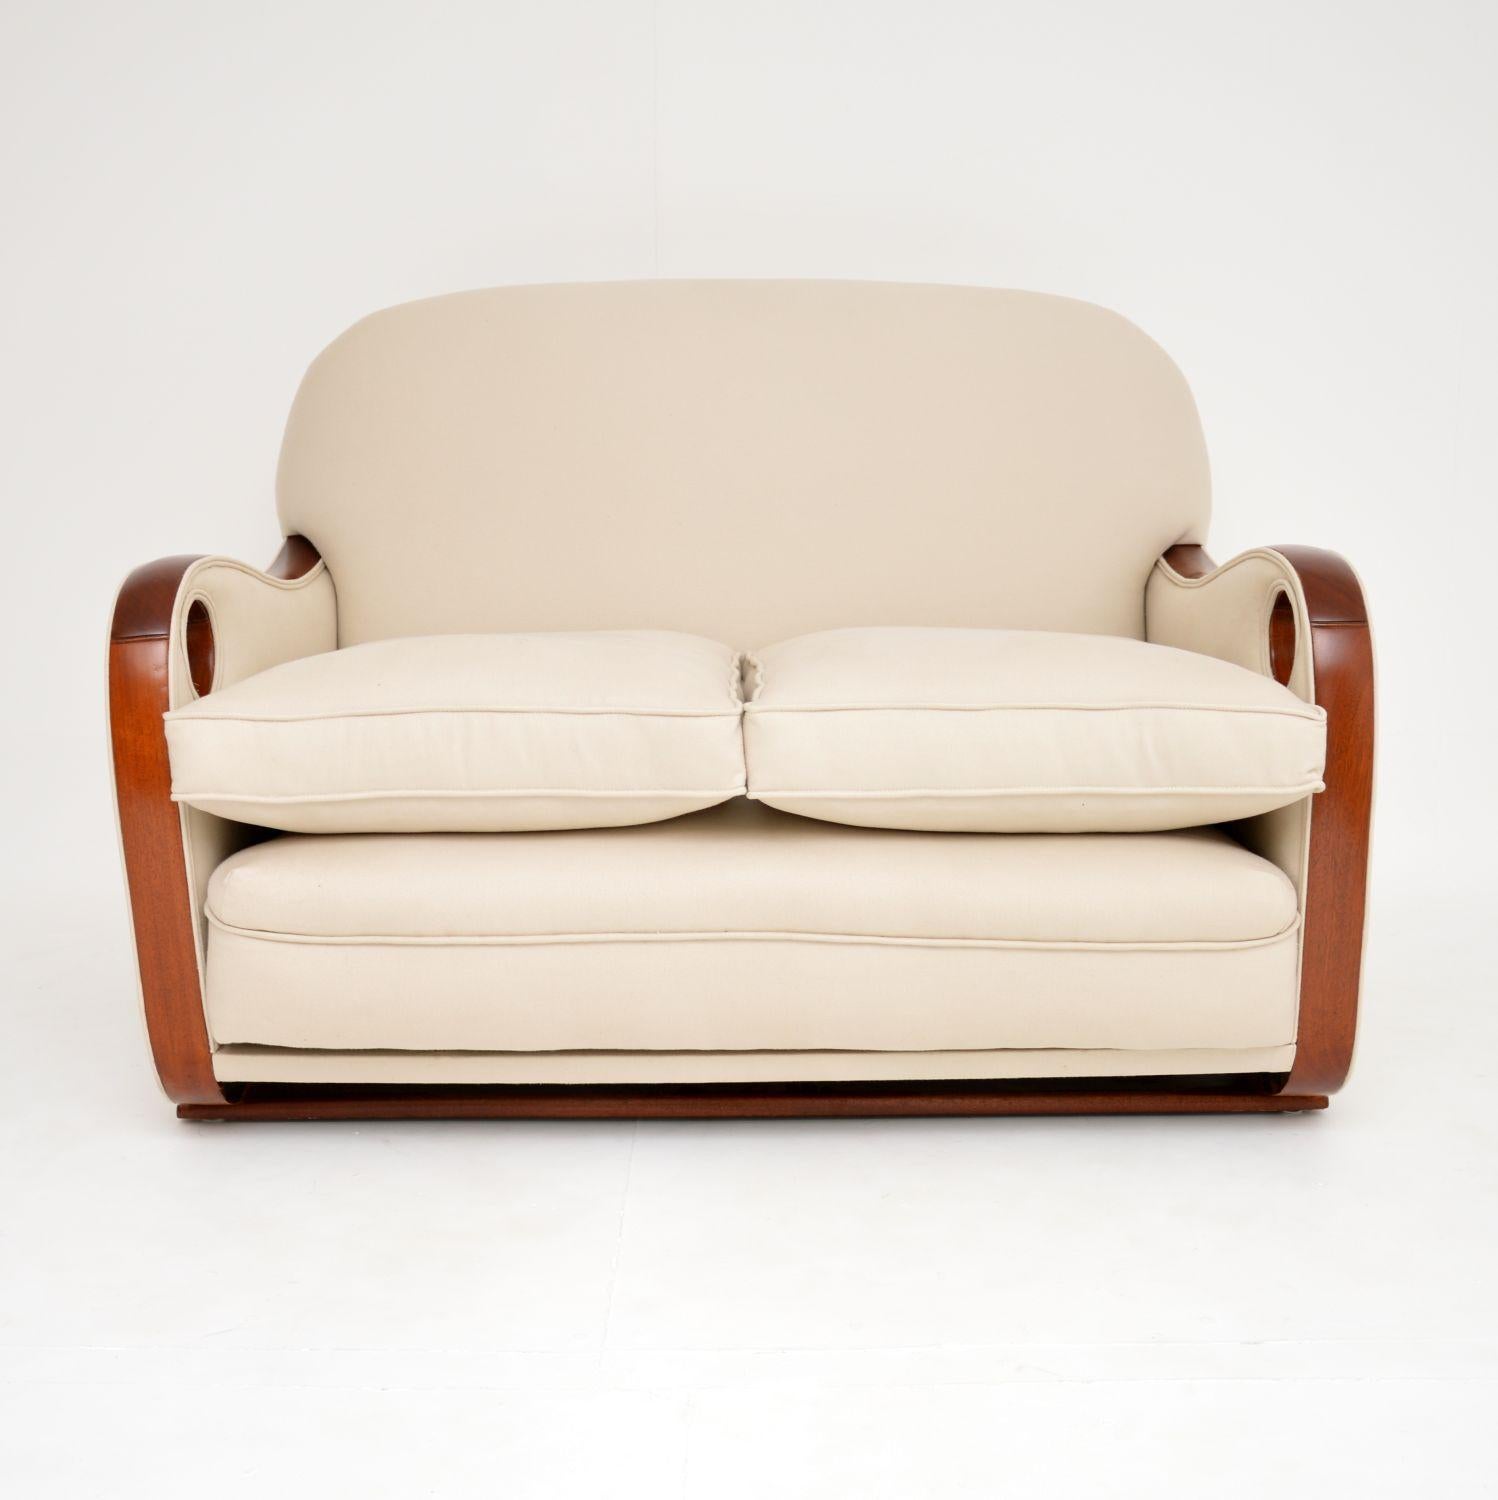 Ein großartiges originales Zweisitzer-Sofa aus der Zeit des Art déco mit runden Details. Es wurde in England hergestellt und stammt aus den 1930er Jahren.

Die Qualität ist erstaunlich, er ist extrem bequem und hat ein sehr auffälliges Design. Die